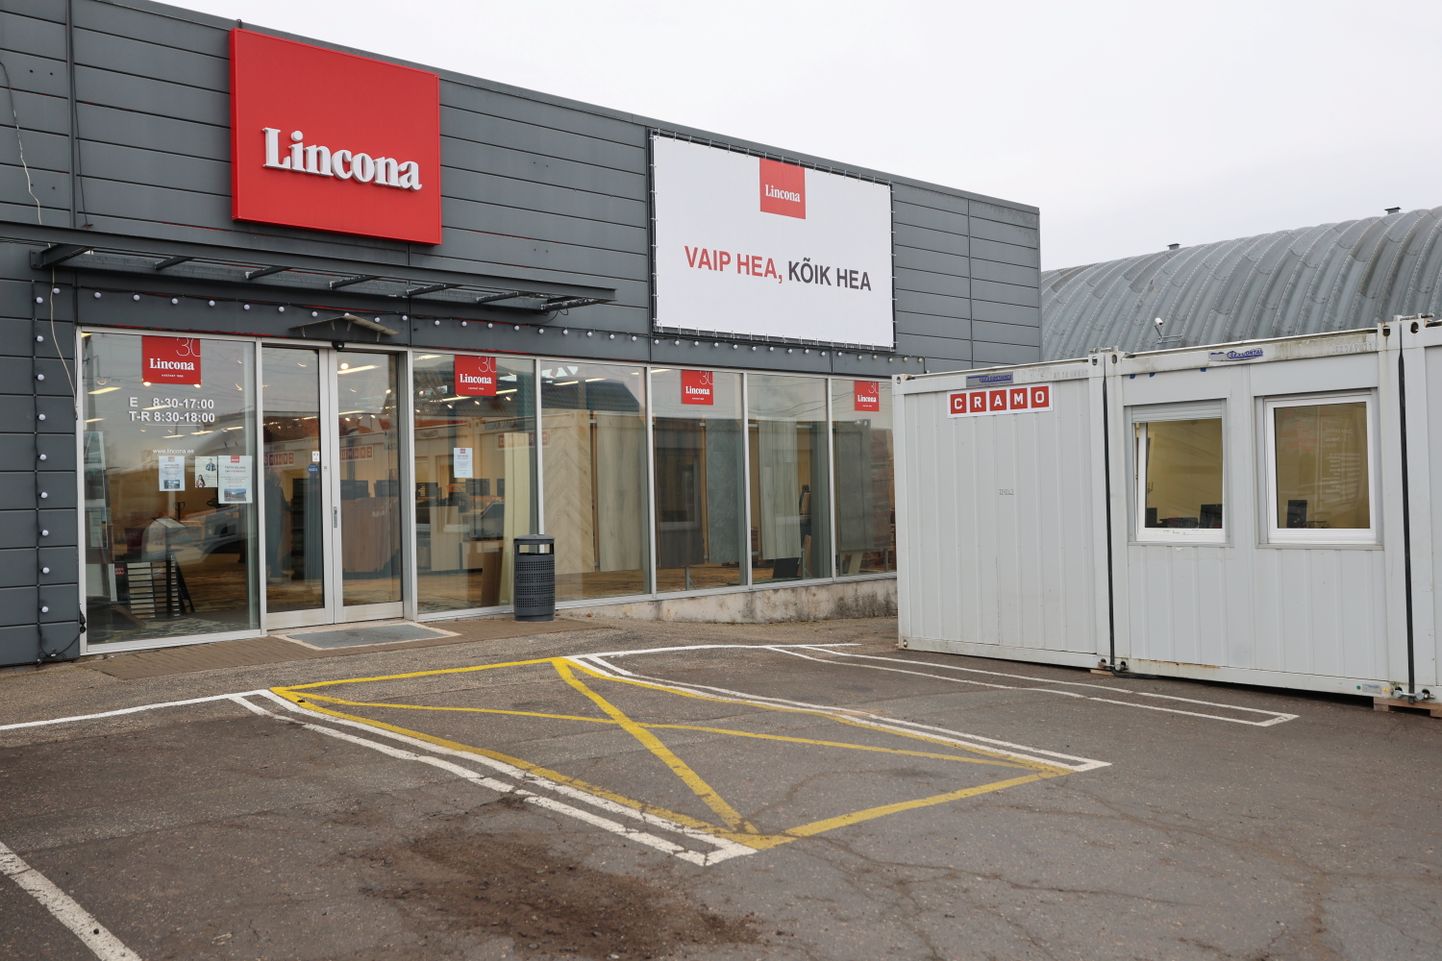 Töö Lincona müügiesinduses jätkub ehituse ajal üsna tavapärases rütmis, sest seda võimaldab maja ette paigaldatud ehitussoojakutest konteinerlinnak.